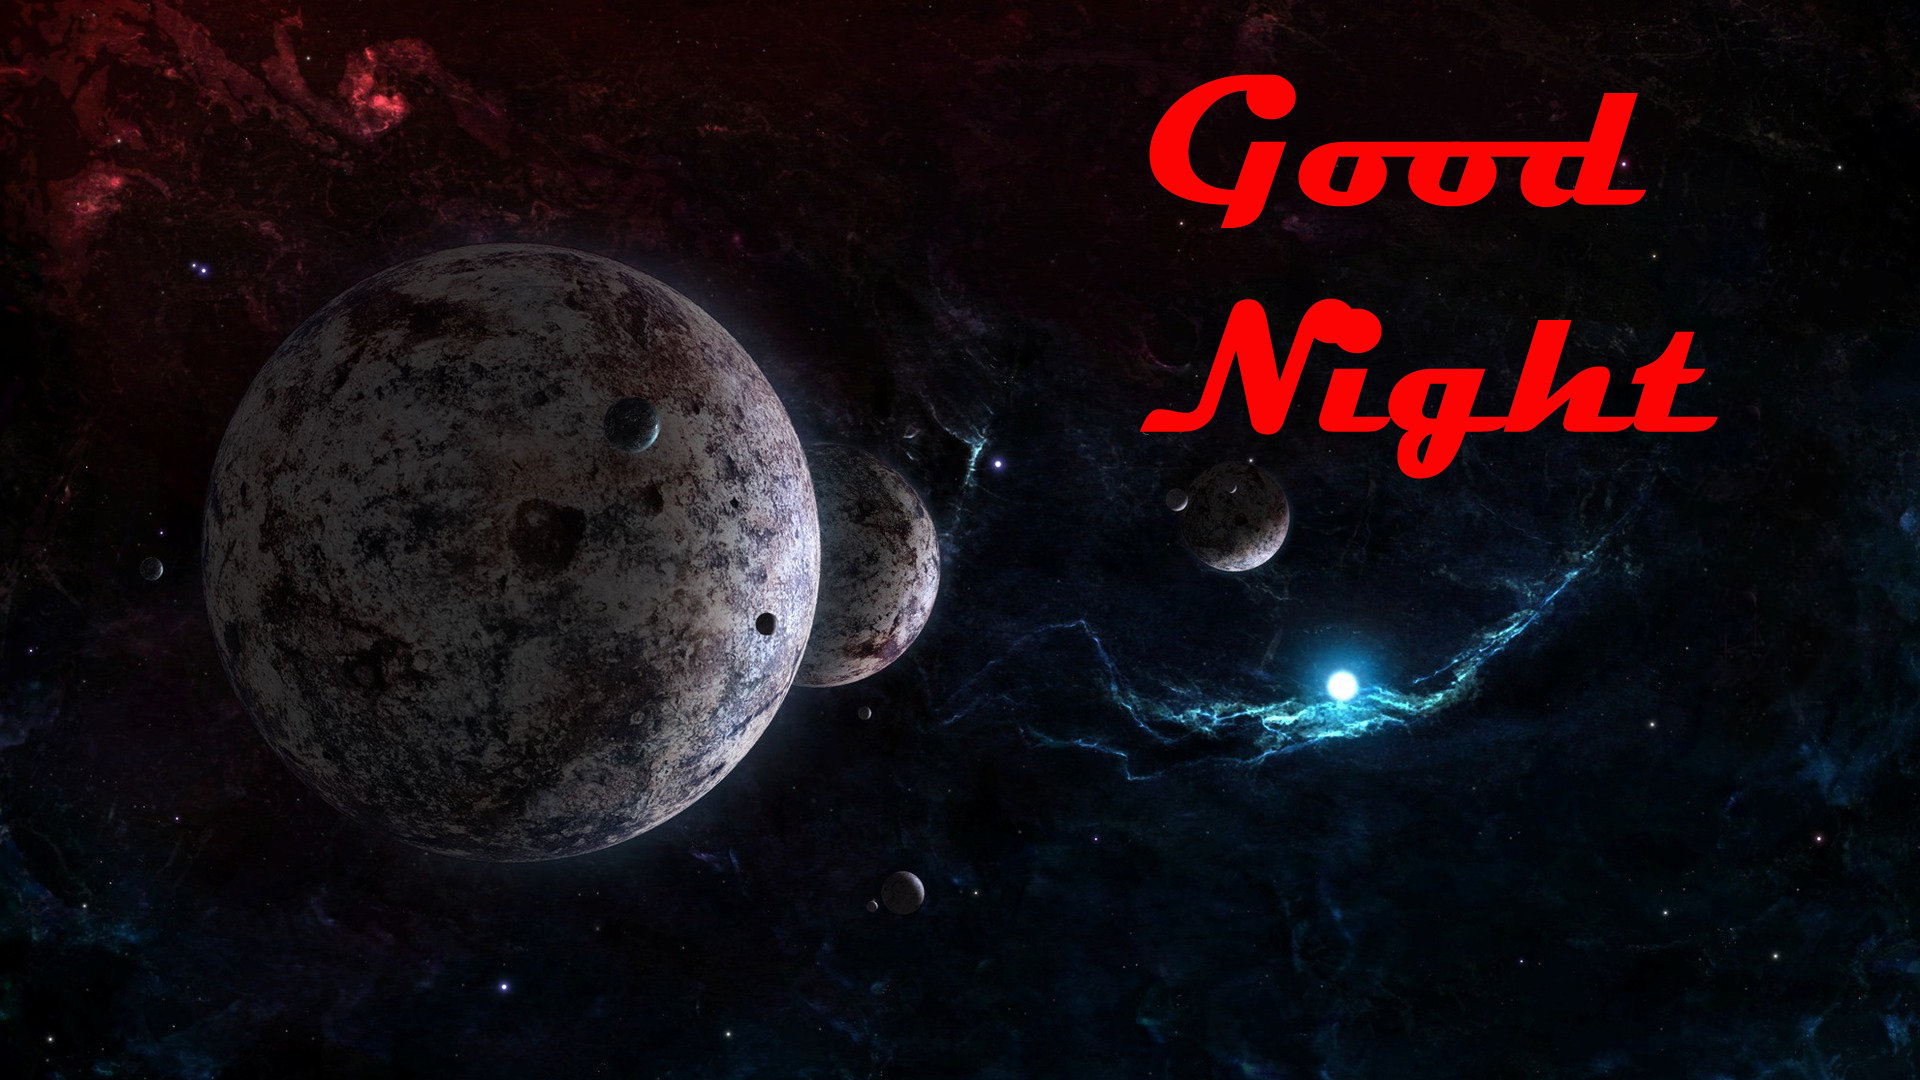 Good Night Msg Facebook - HD Wallpaper 